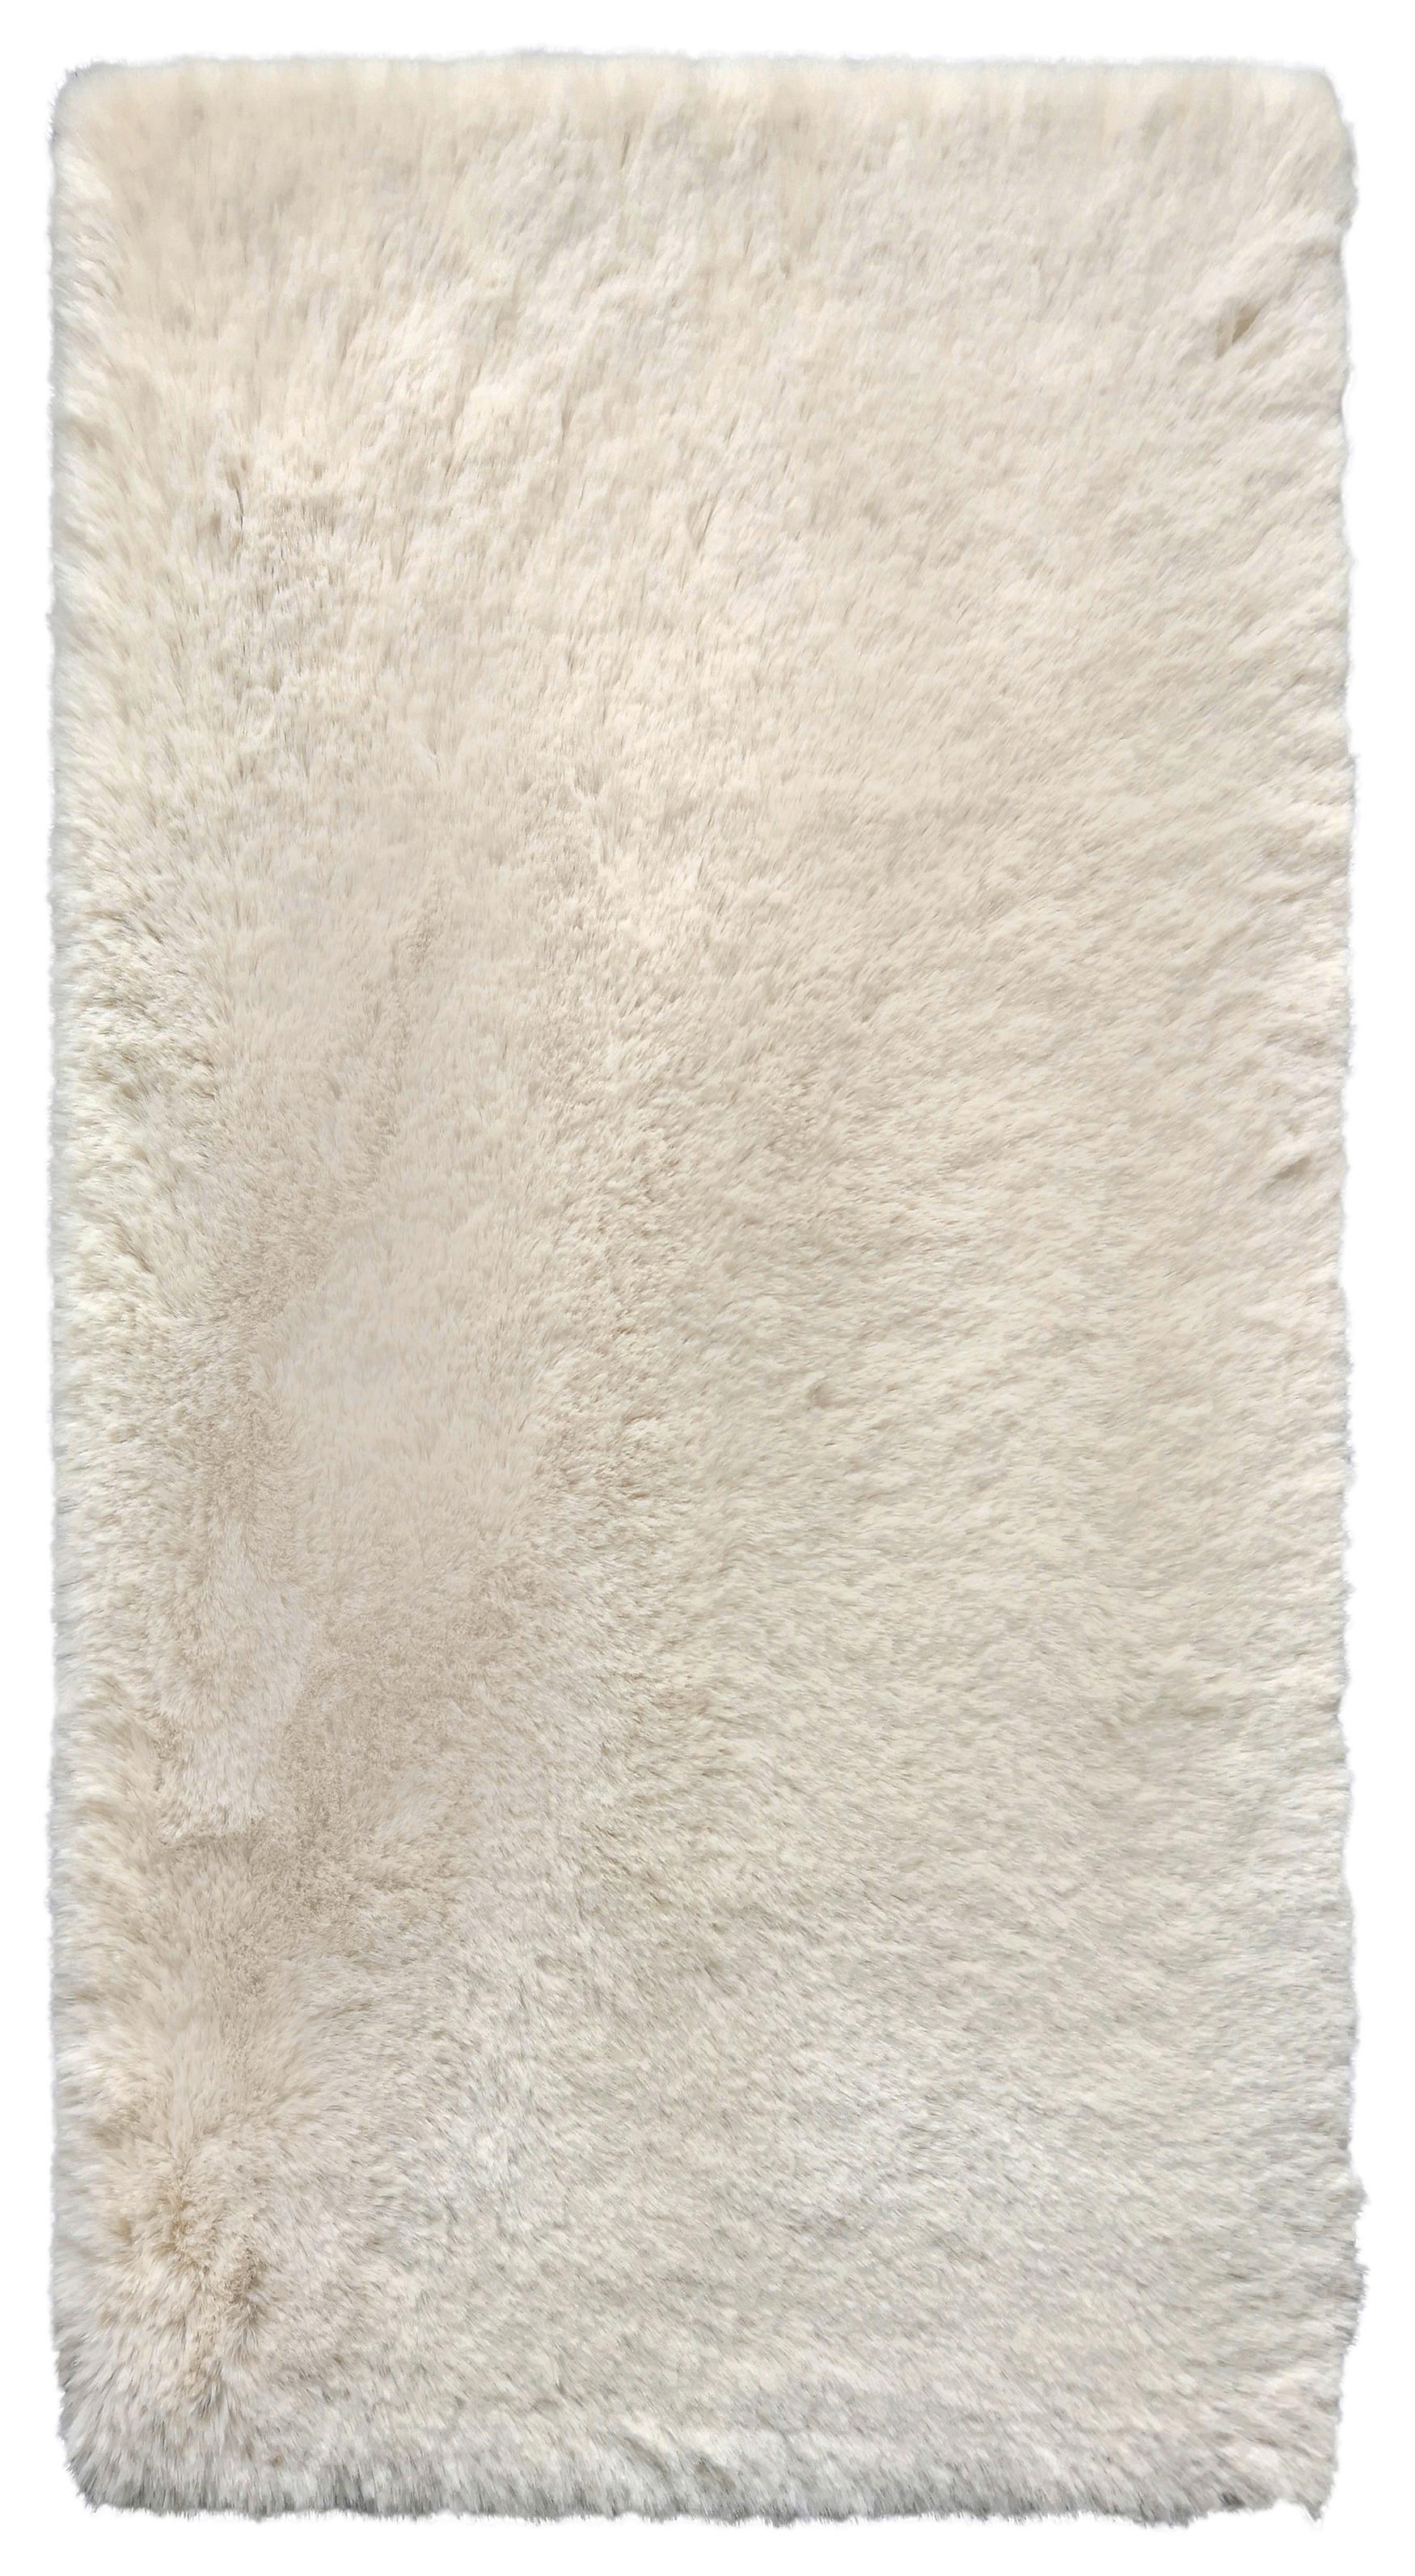 Kunstfell Kunstfell Caroline 1 in Beige ca.80x150cm - Beige, Textil (80/150cm) - Modern Living